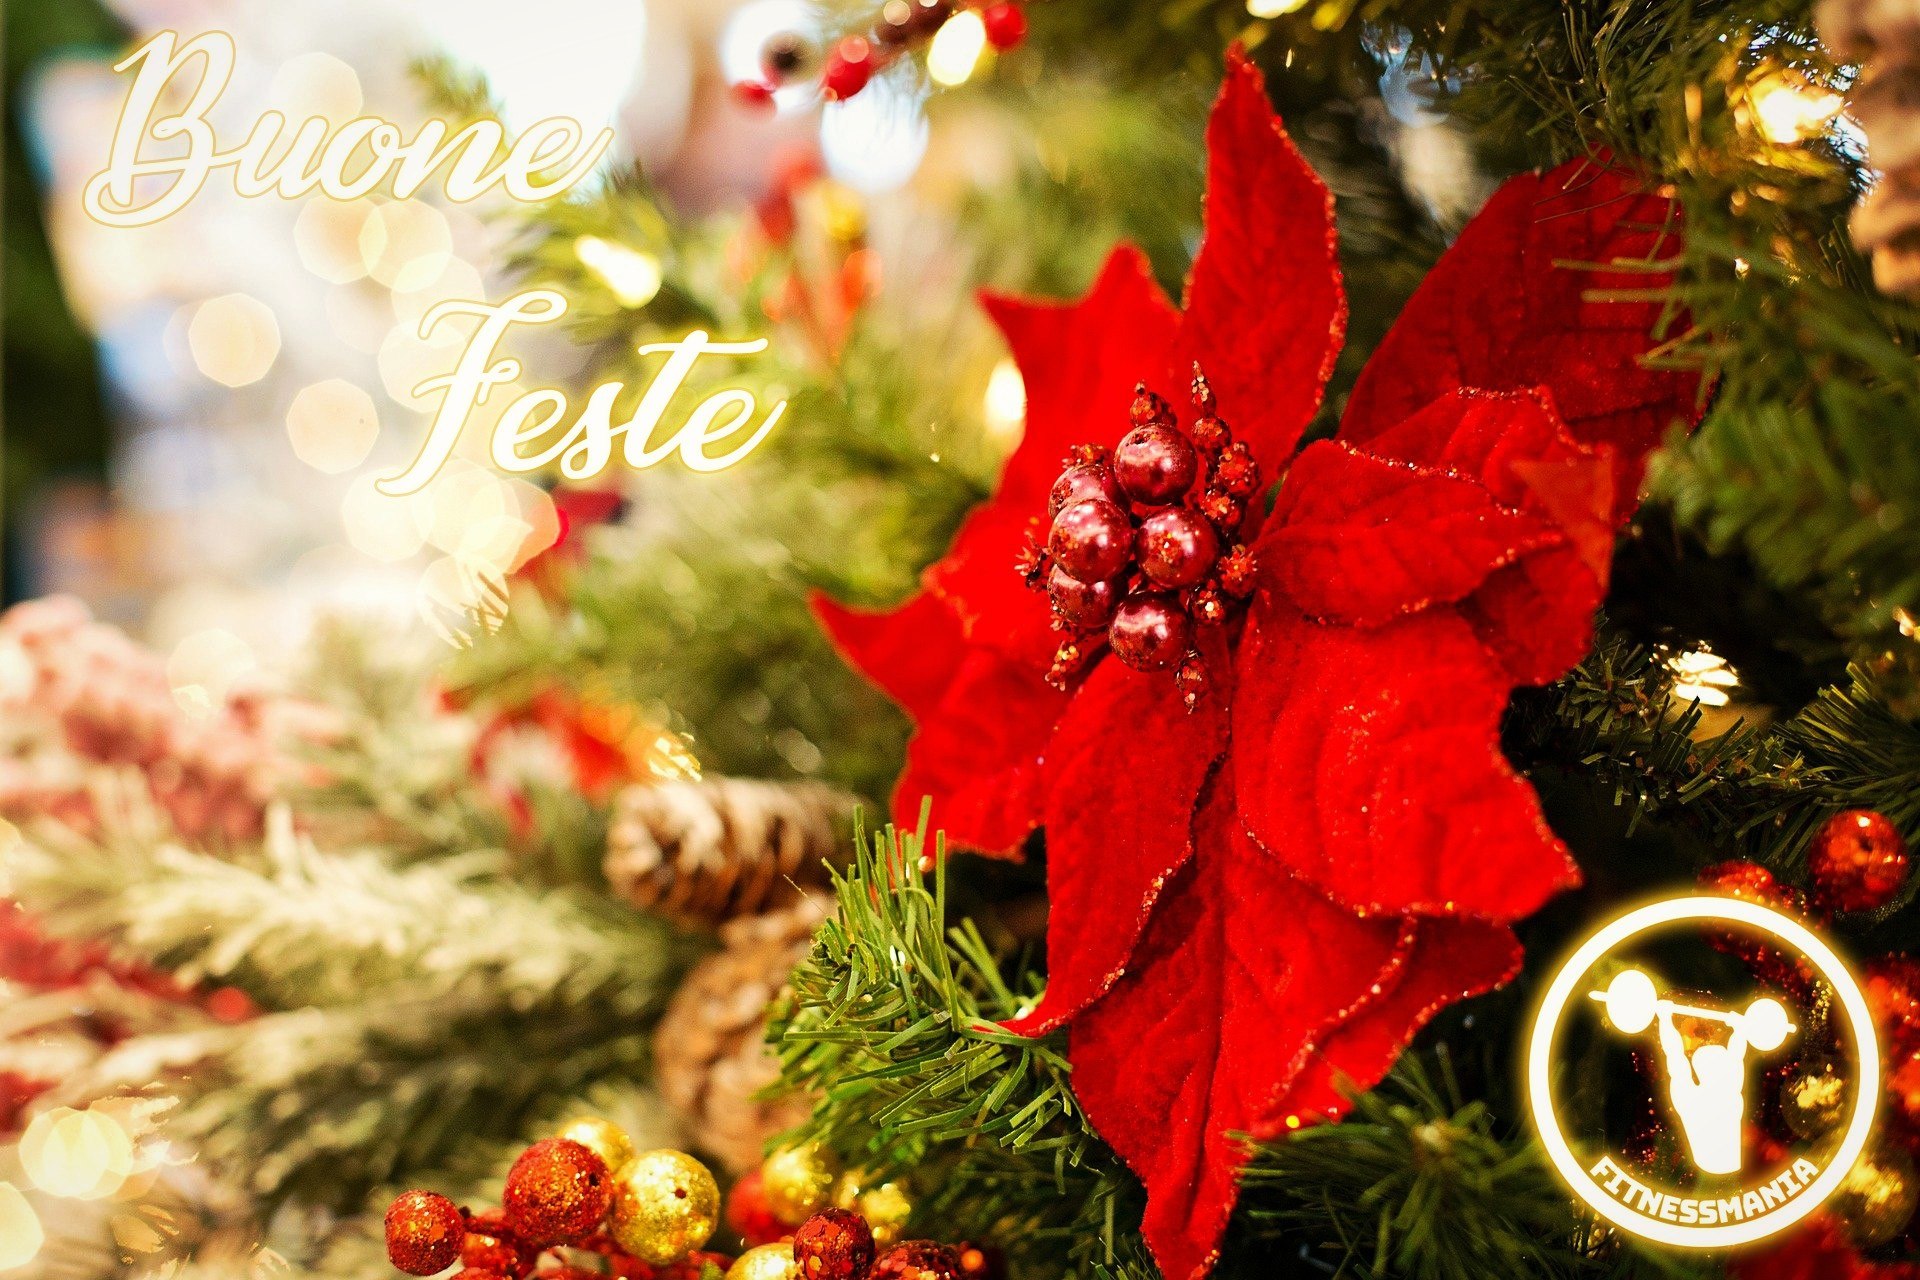 Natale 2020 - Buone Feste a Tutti! - Buon Natale a tutta la nostra gentile clientela da FITNESSMANIA!